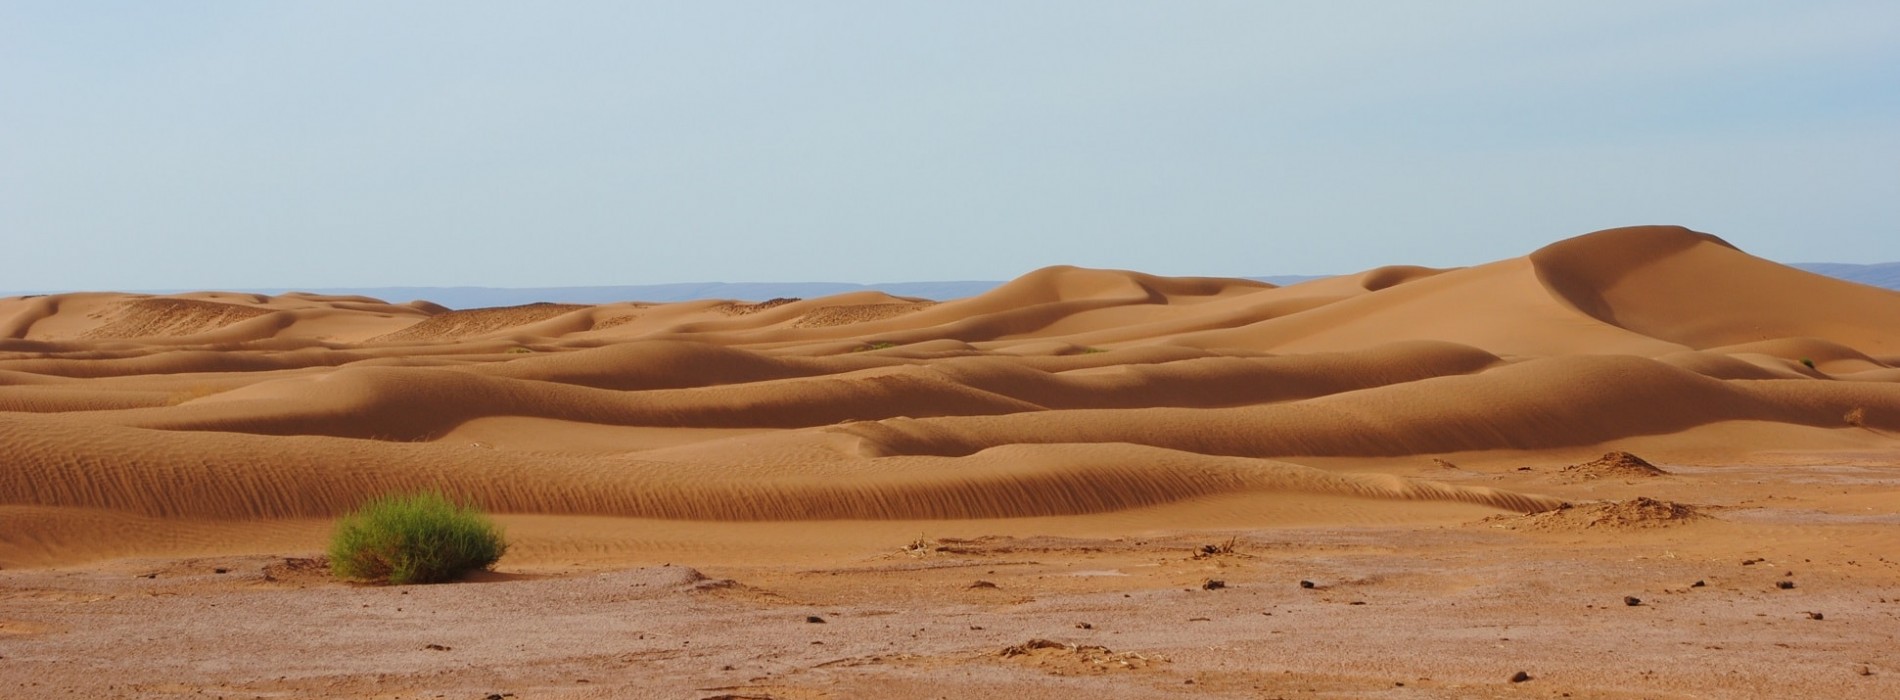 Mesmerising desert landscapes